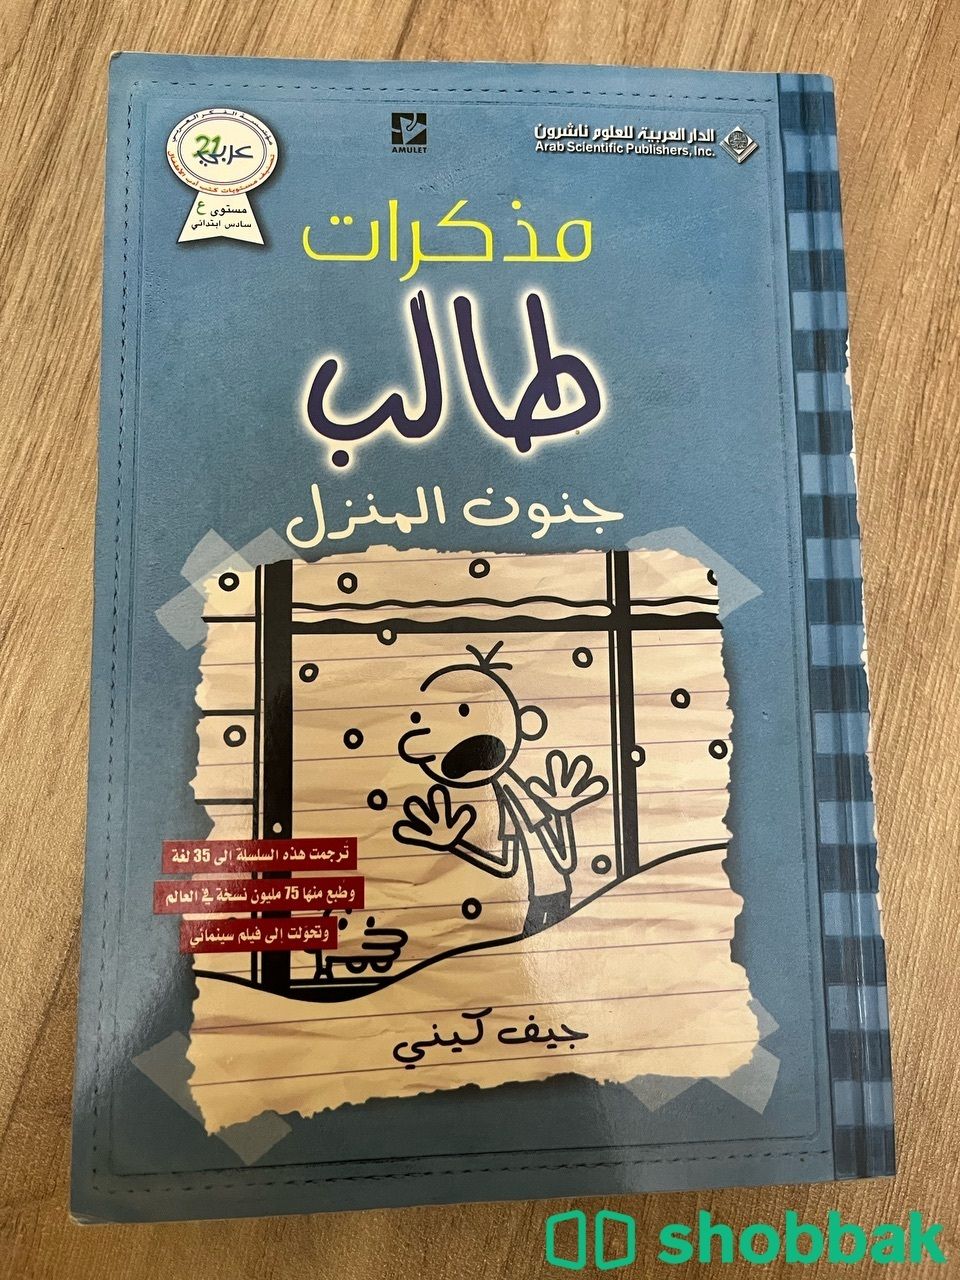 مجموعة مذكرات طالب (9) كتب Shobbak Saudi Arabia